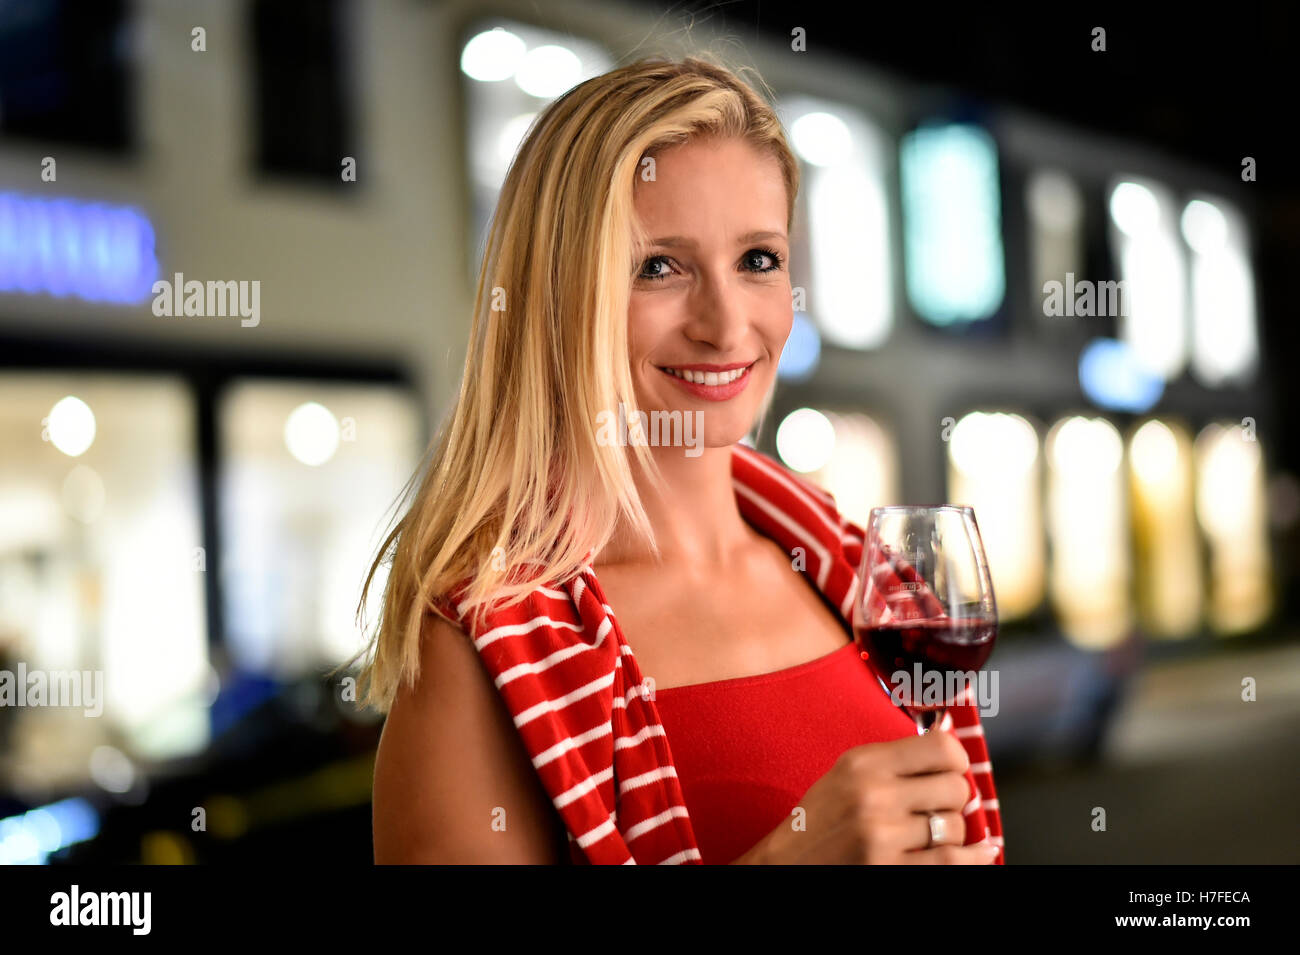 Femme avec un verre de vin dans sa main, dans la rue, la nuit, Allemagne Banque D'Images